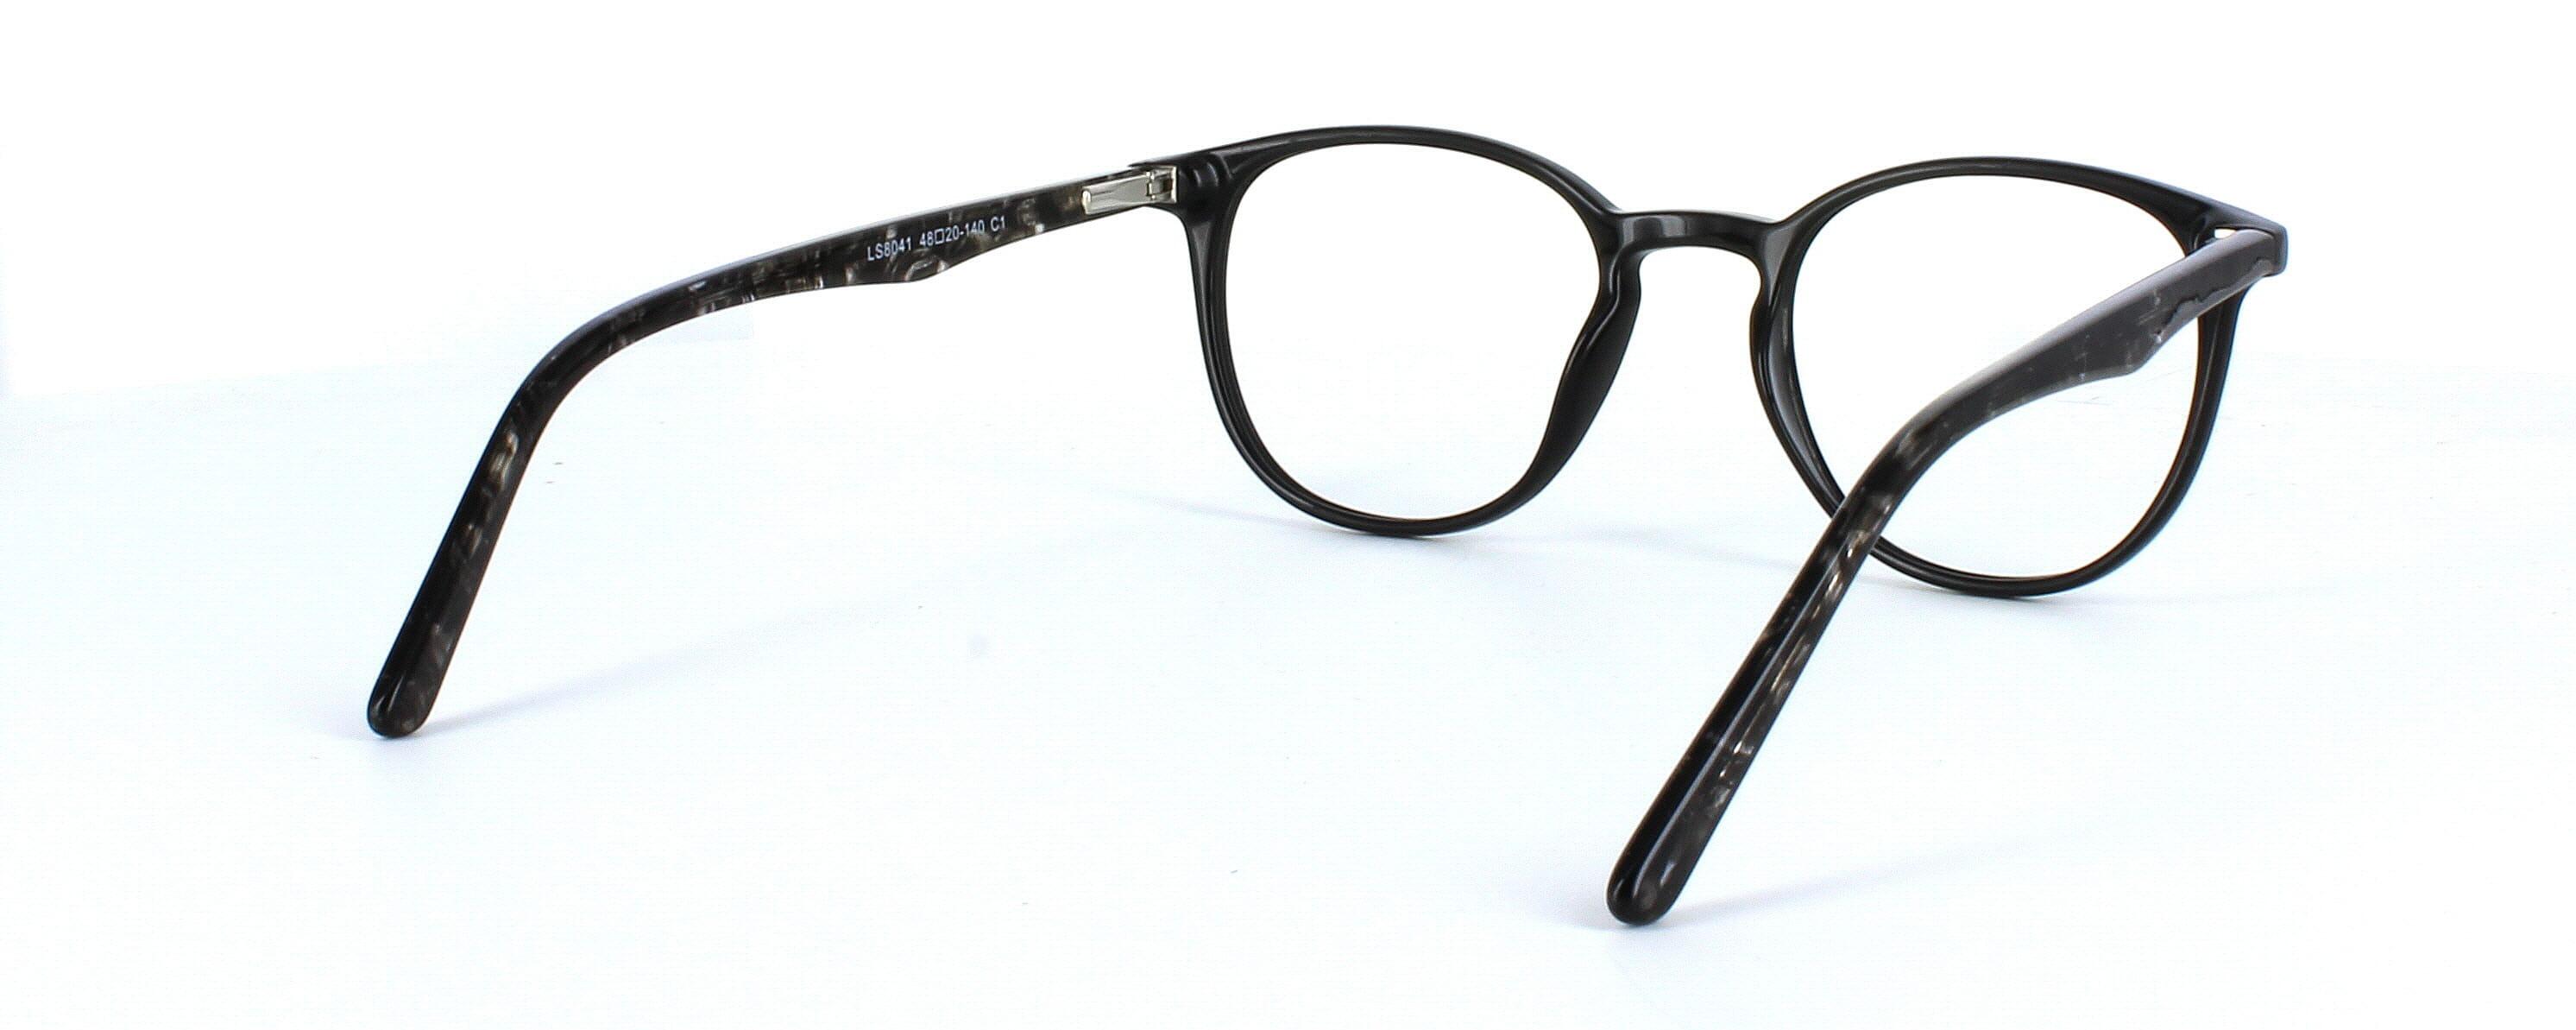 Canis - shiny black plastic round shaped glasses frame - image 5